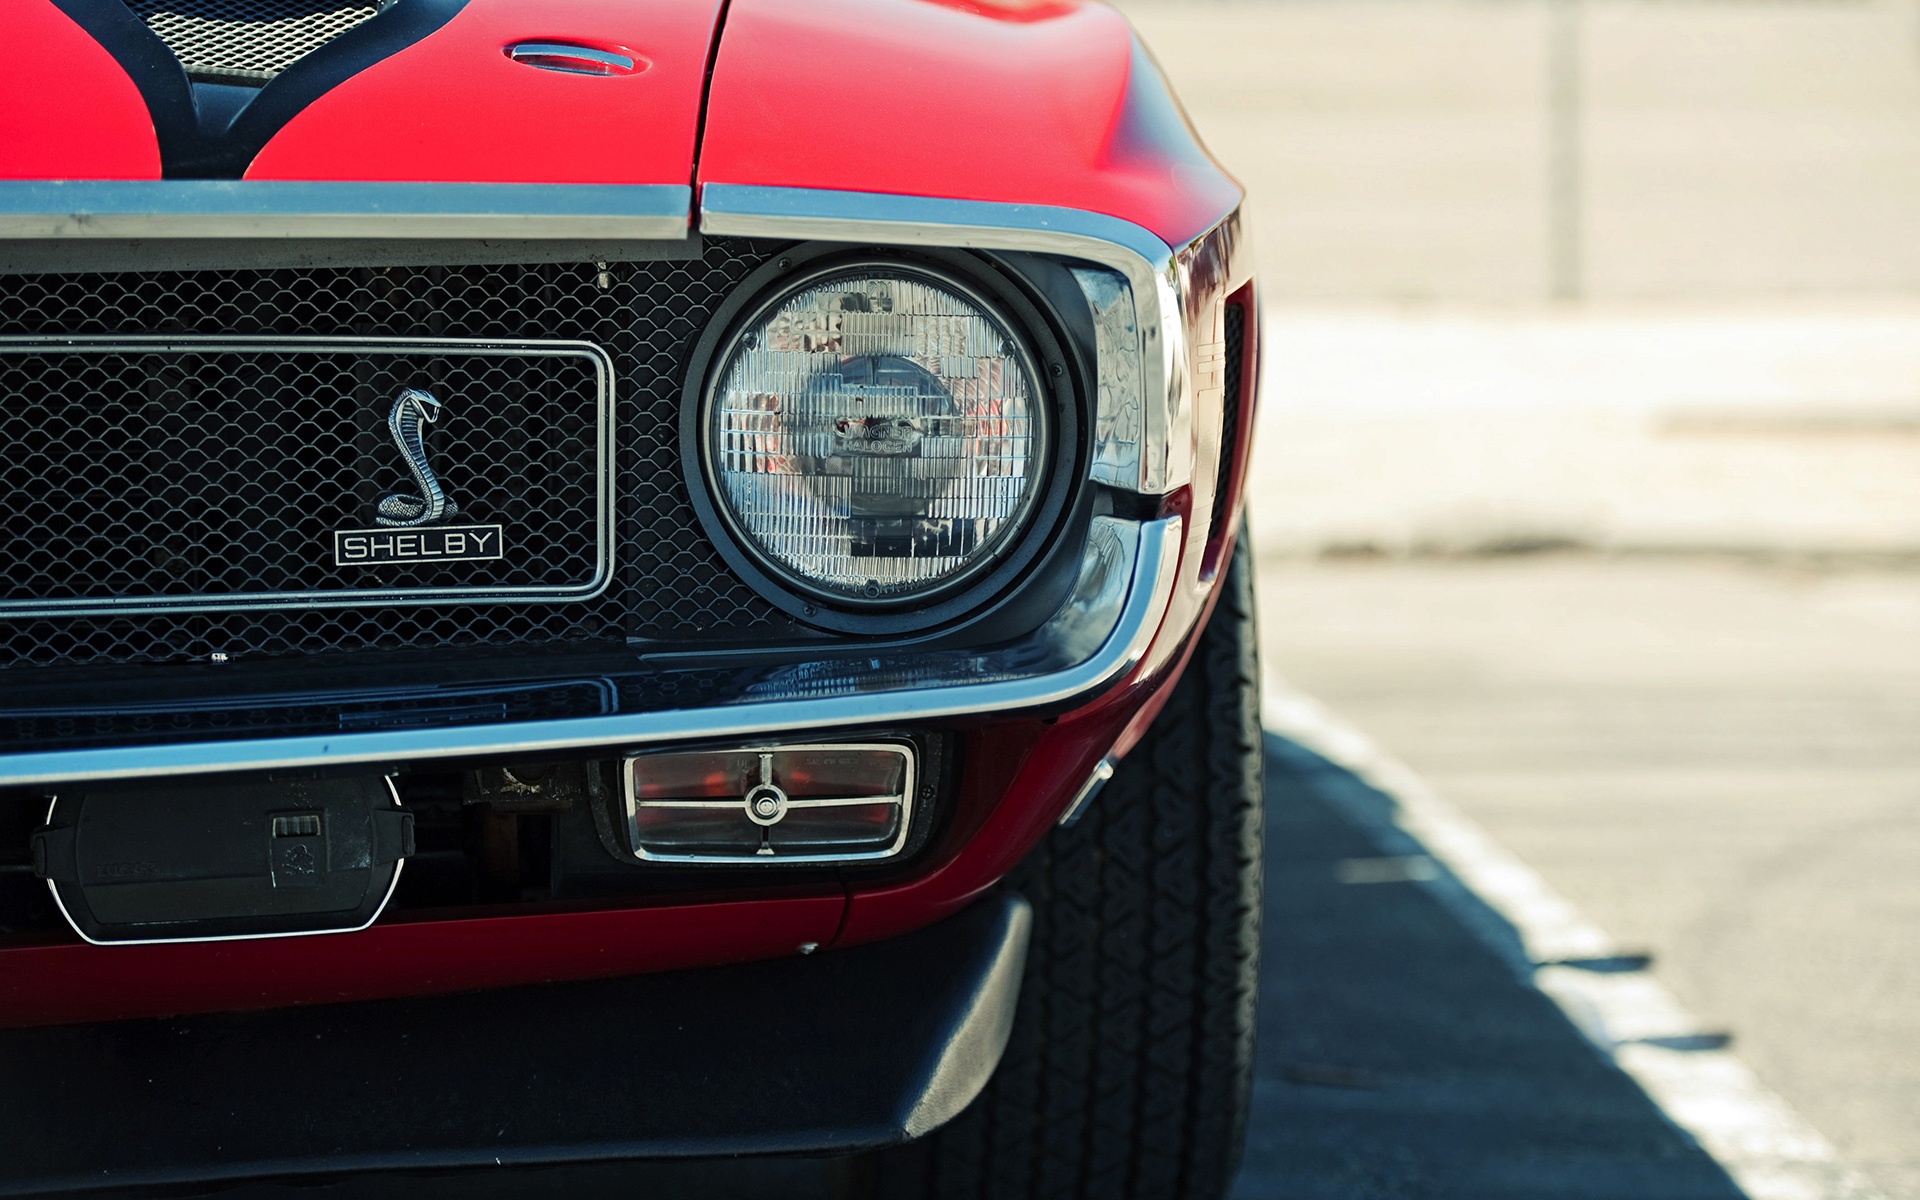 Télécharger des fonds d'écran Ford Mustang Shelby HD